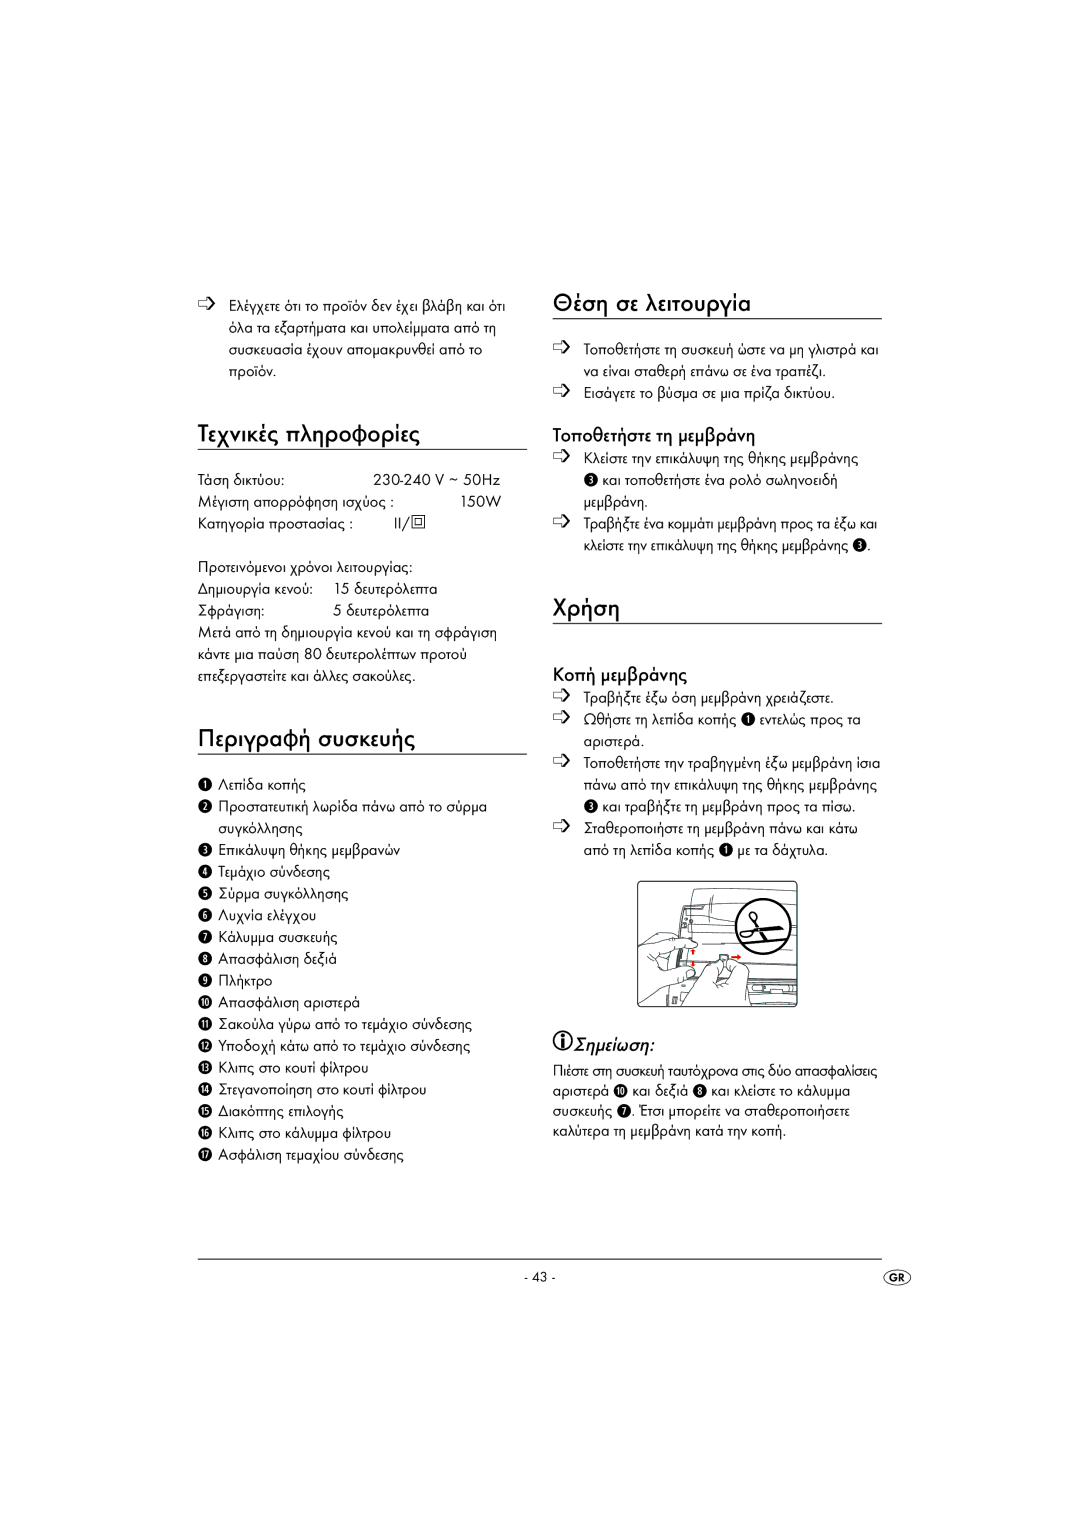 Kompernass KH 1605 manual Τεχνικές πληροφορίες, Περιγραφή συσκευής, Θέση σε λειτουργία, Χρήση, Σημείωση 